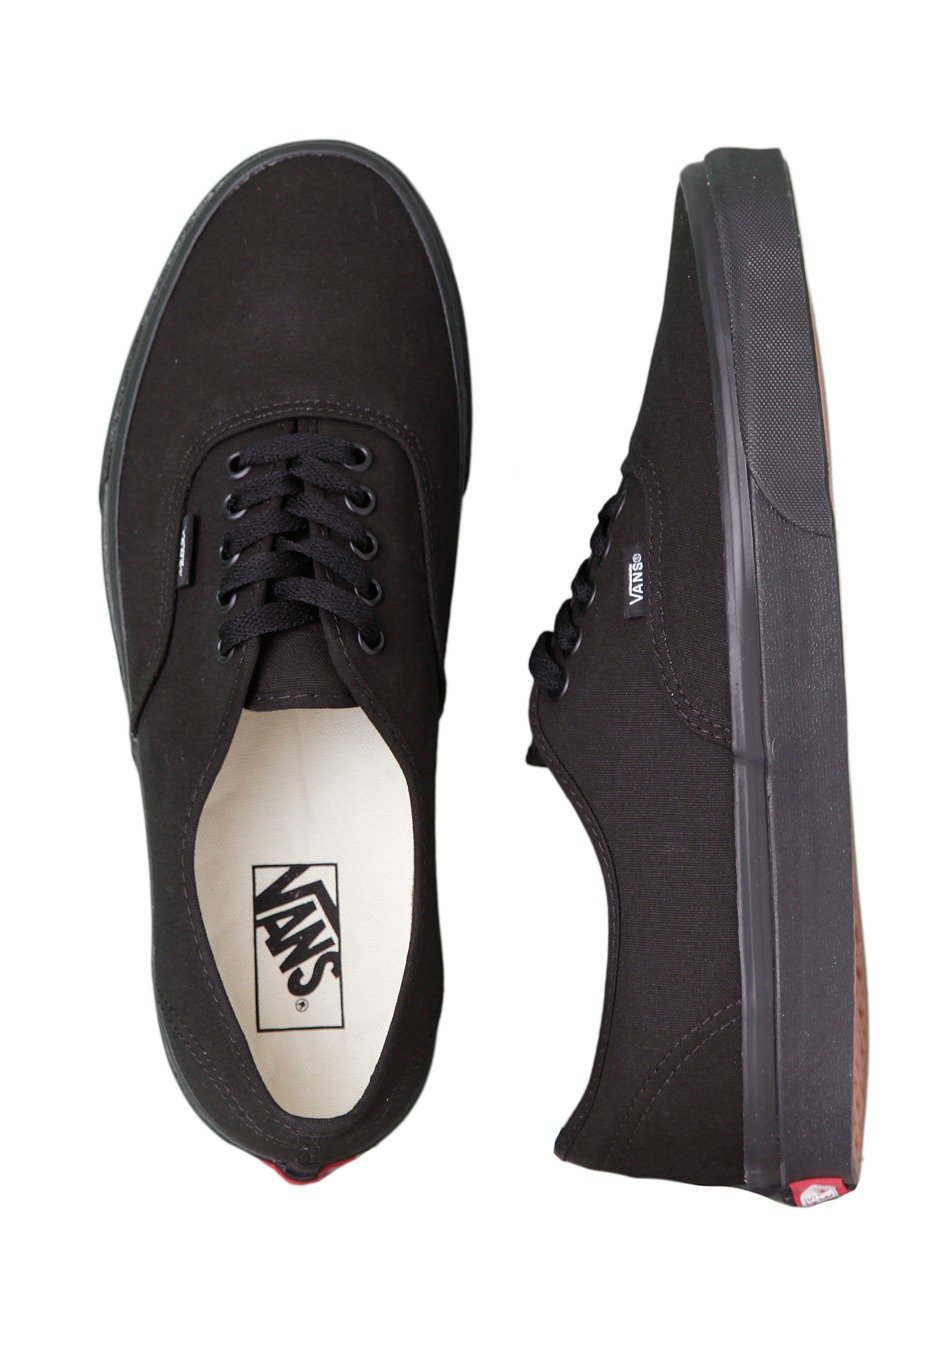 Vans - Authentic Black/Black - Shoes